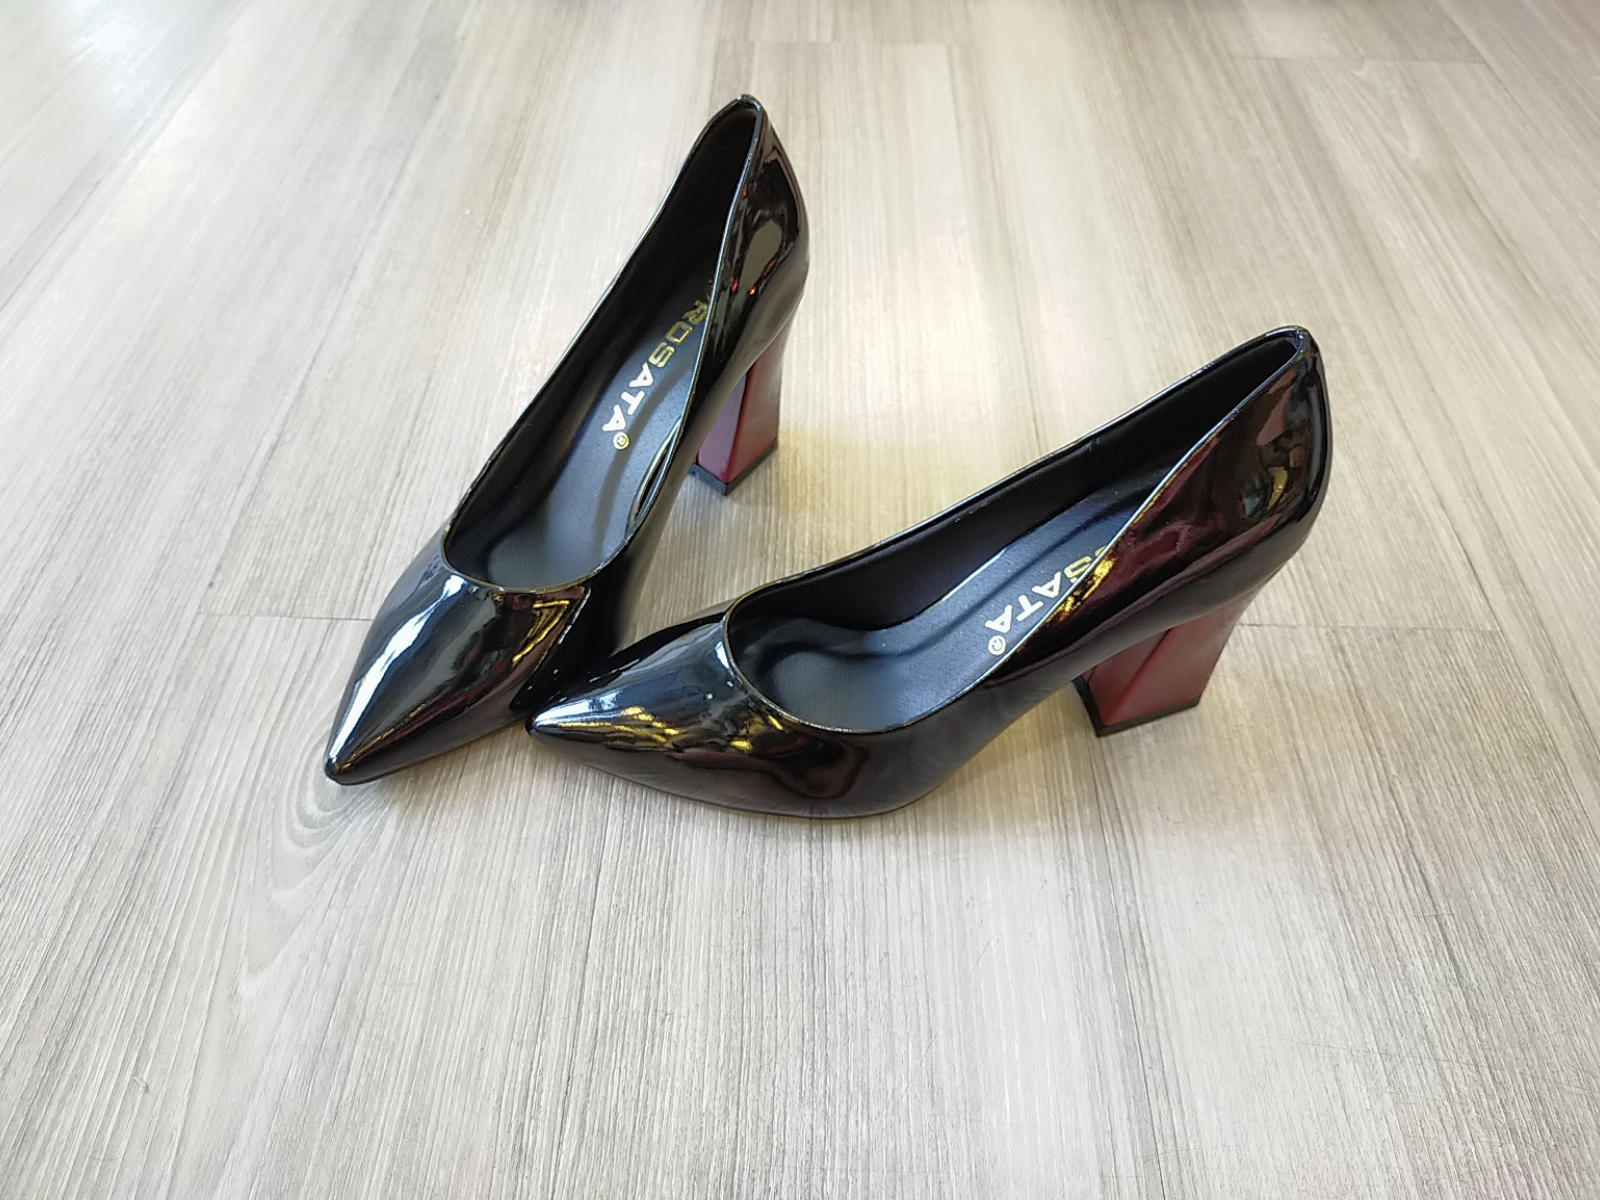 Giày cao gót nữ nghịch màu cao cấp ROSATA RO125 7p gót vuông - HÀNG VIỆT NAM - BKSTORE